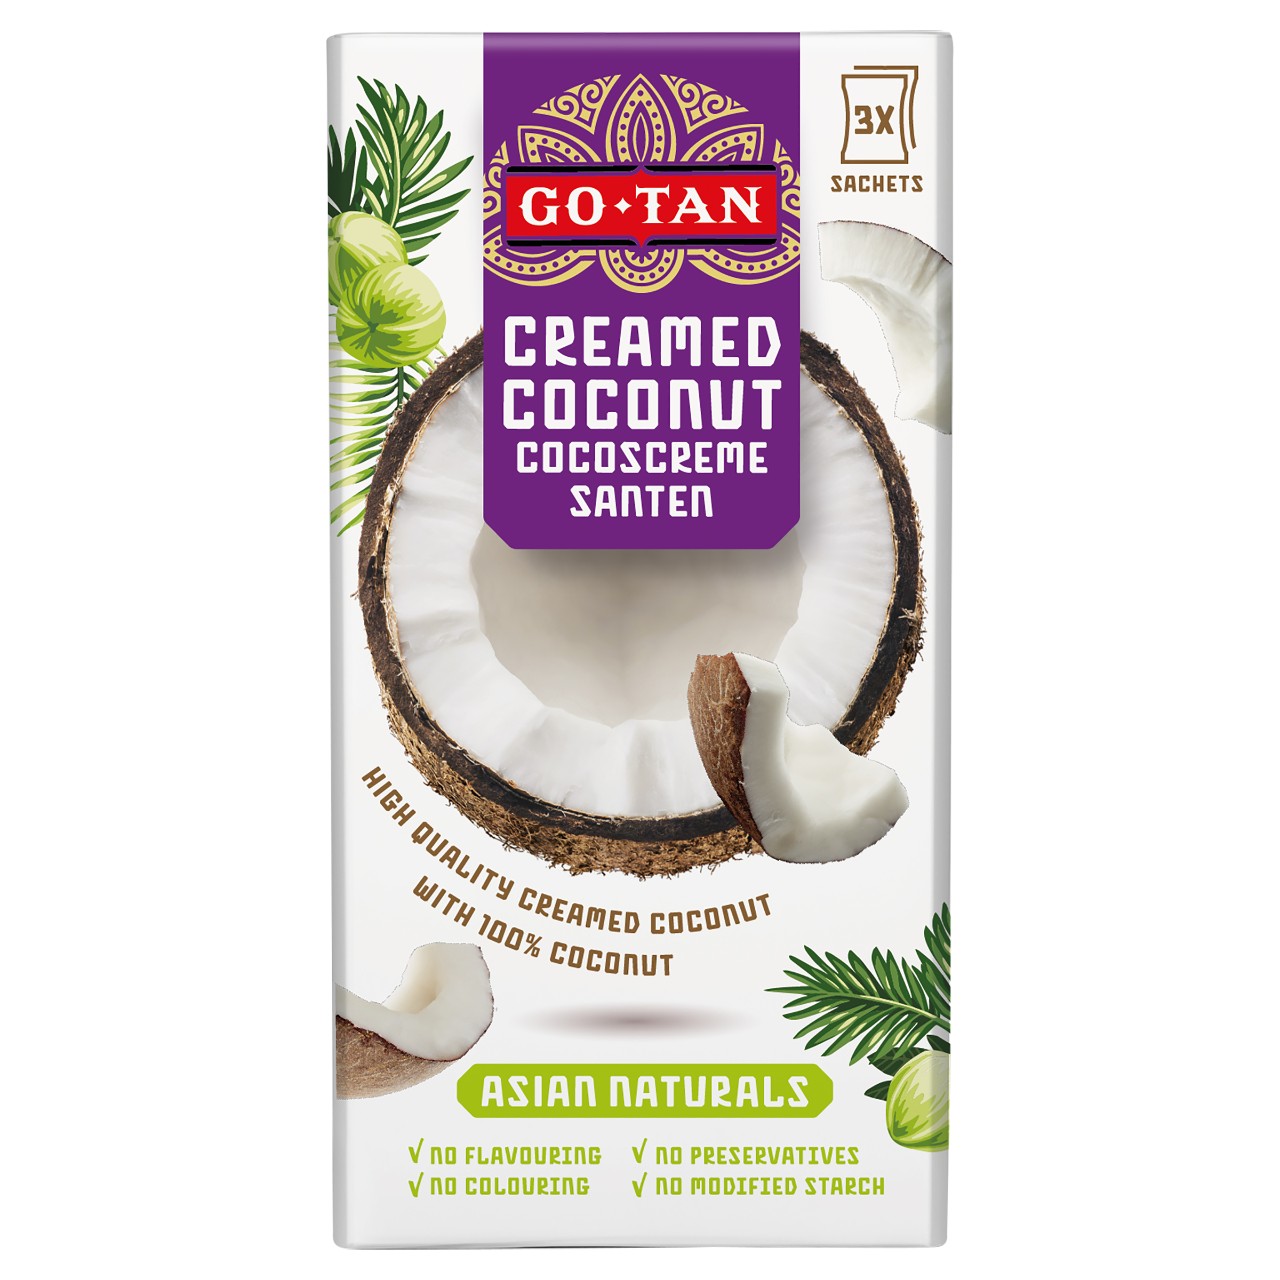 Santen coconut cream